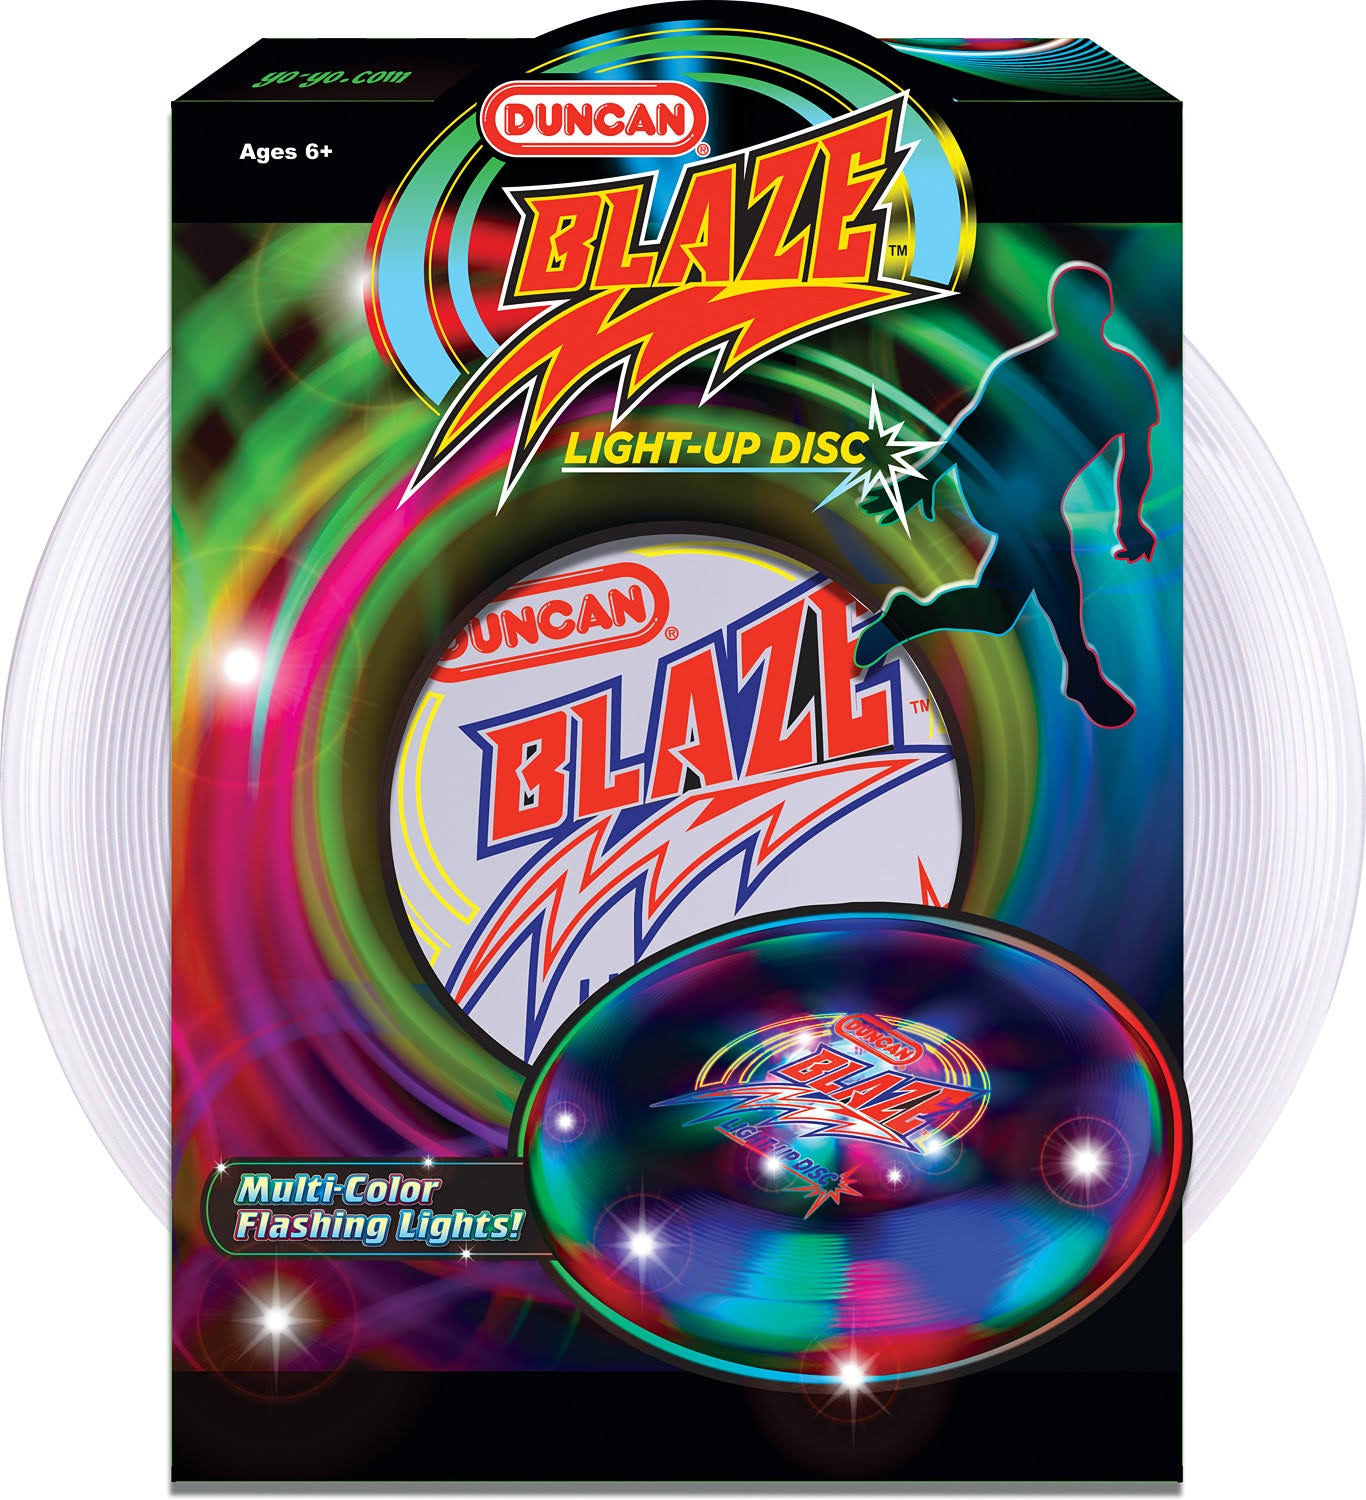 Duncan Blaze Light Up Flying Disc Toy